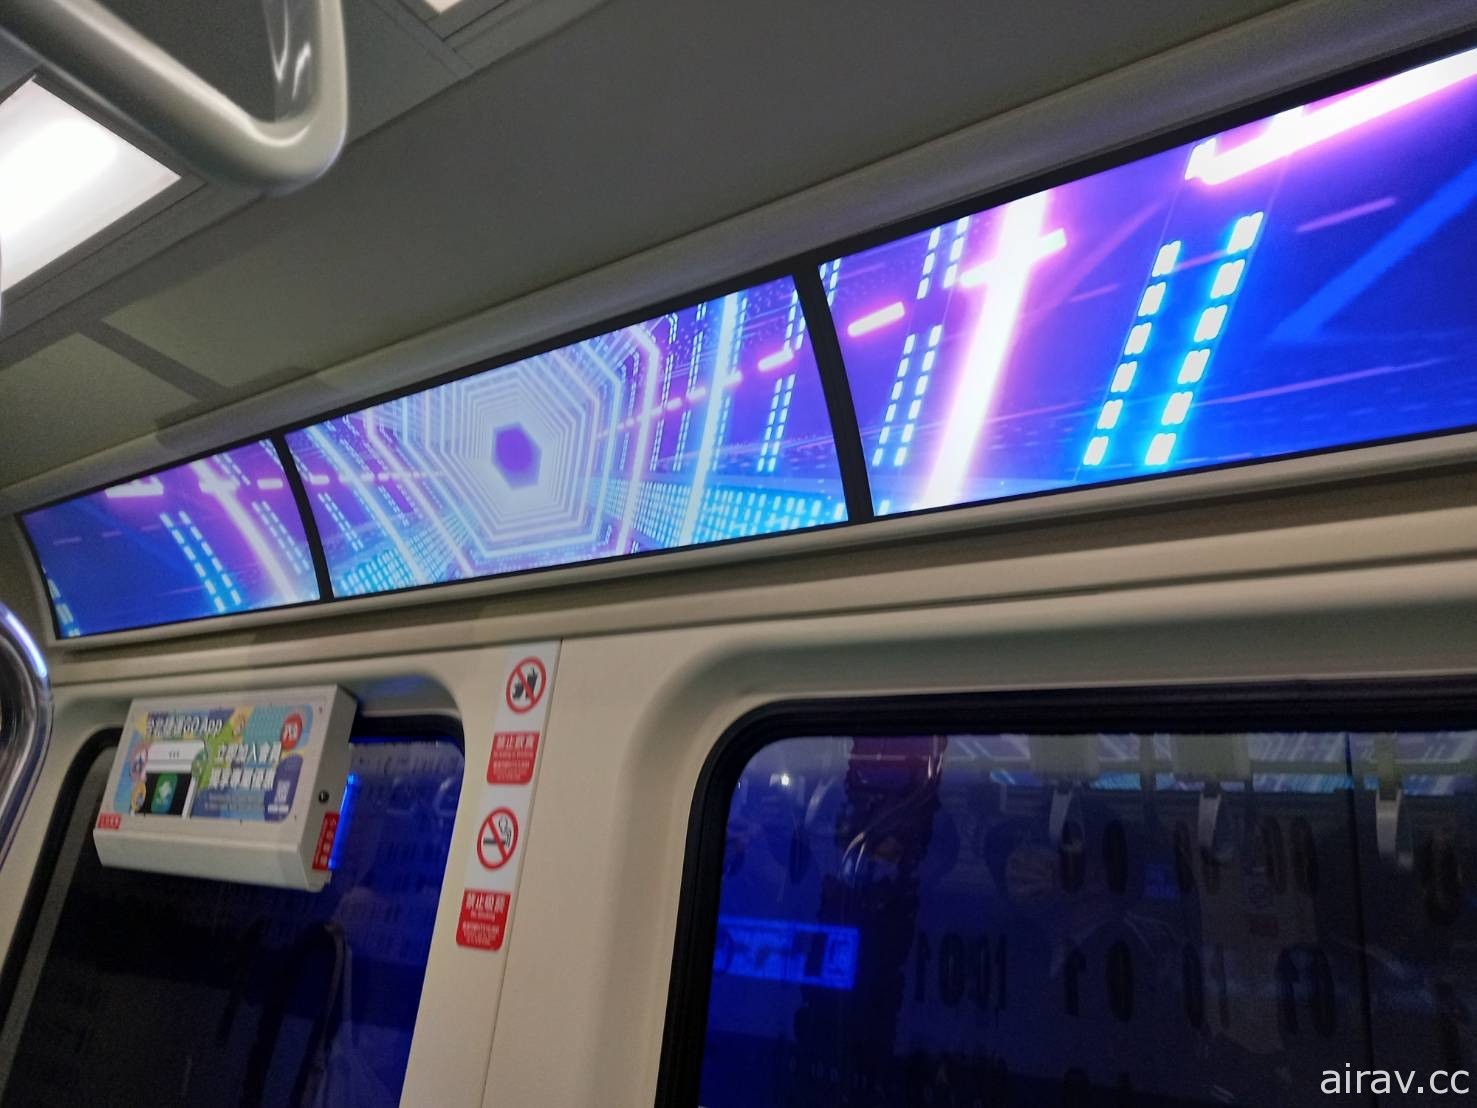 滿滿都是寶可夢！北捷板南線「Smart Display Metro 數位列車」今日上路